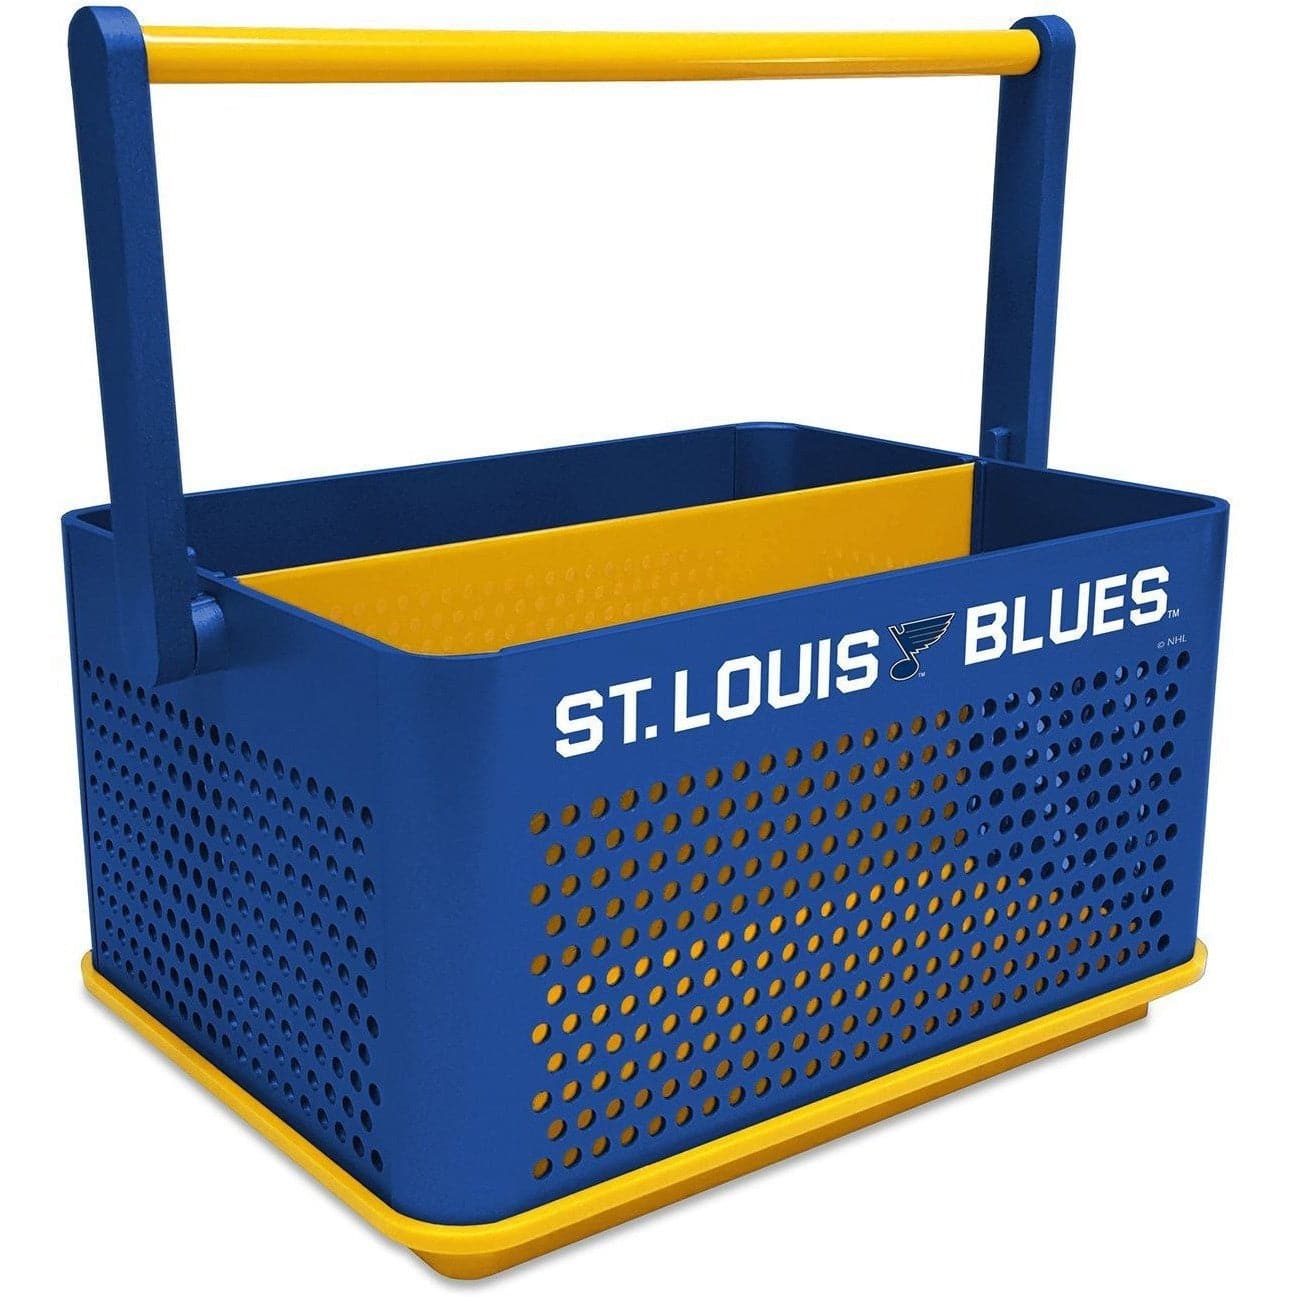 St. Louis Blues: Tailgate Caddy - The Fan-Brand